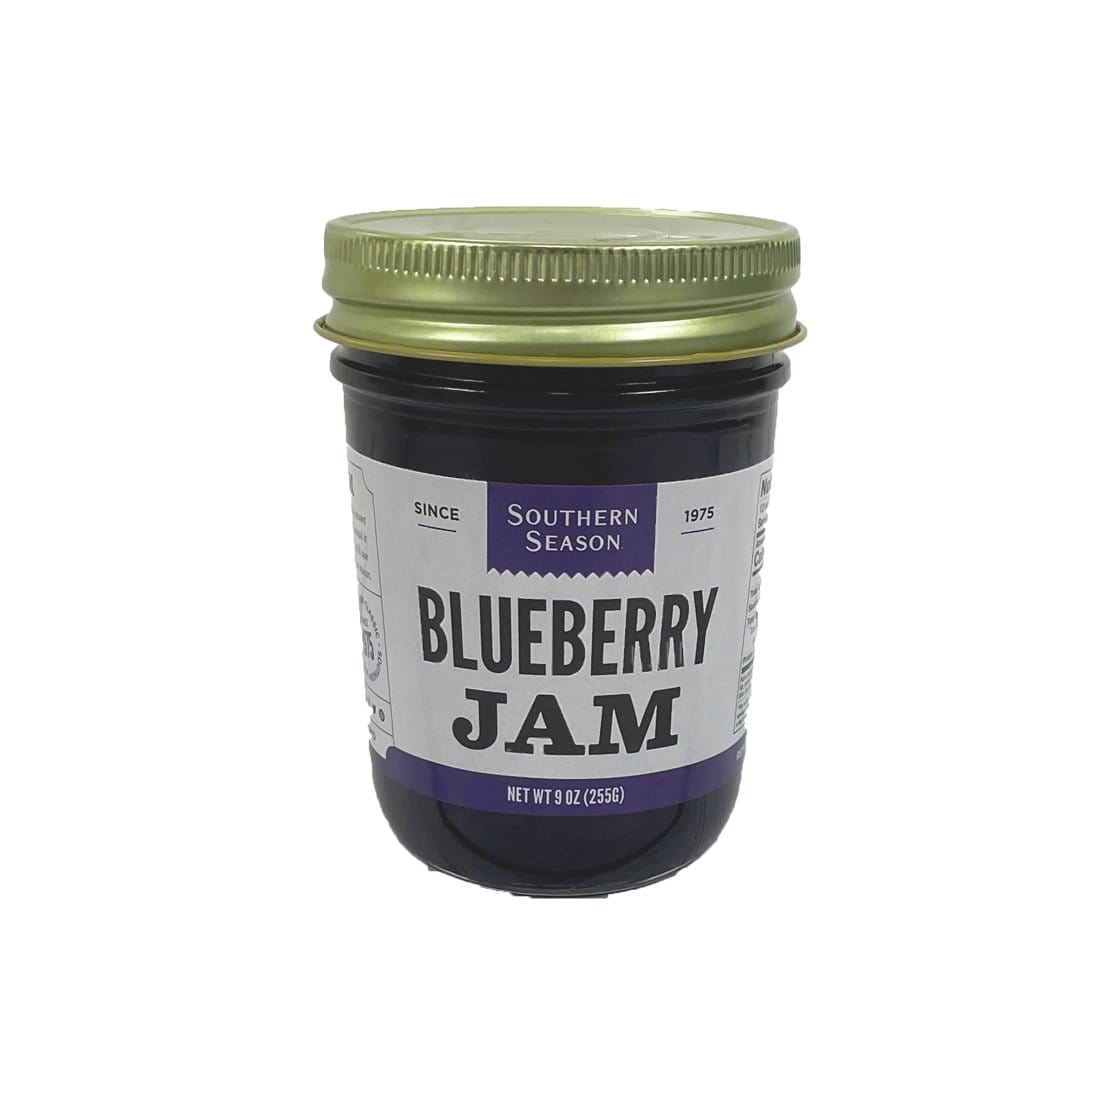 Southern Season Jam Southern Season Blueberry Jam 9 oz